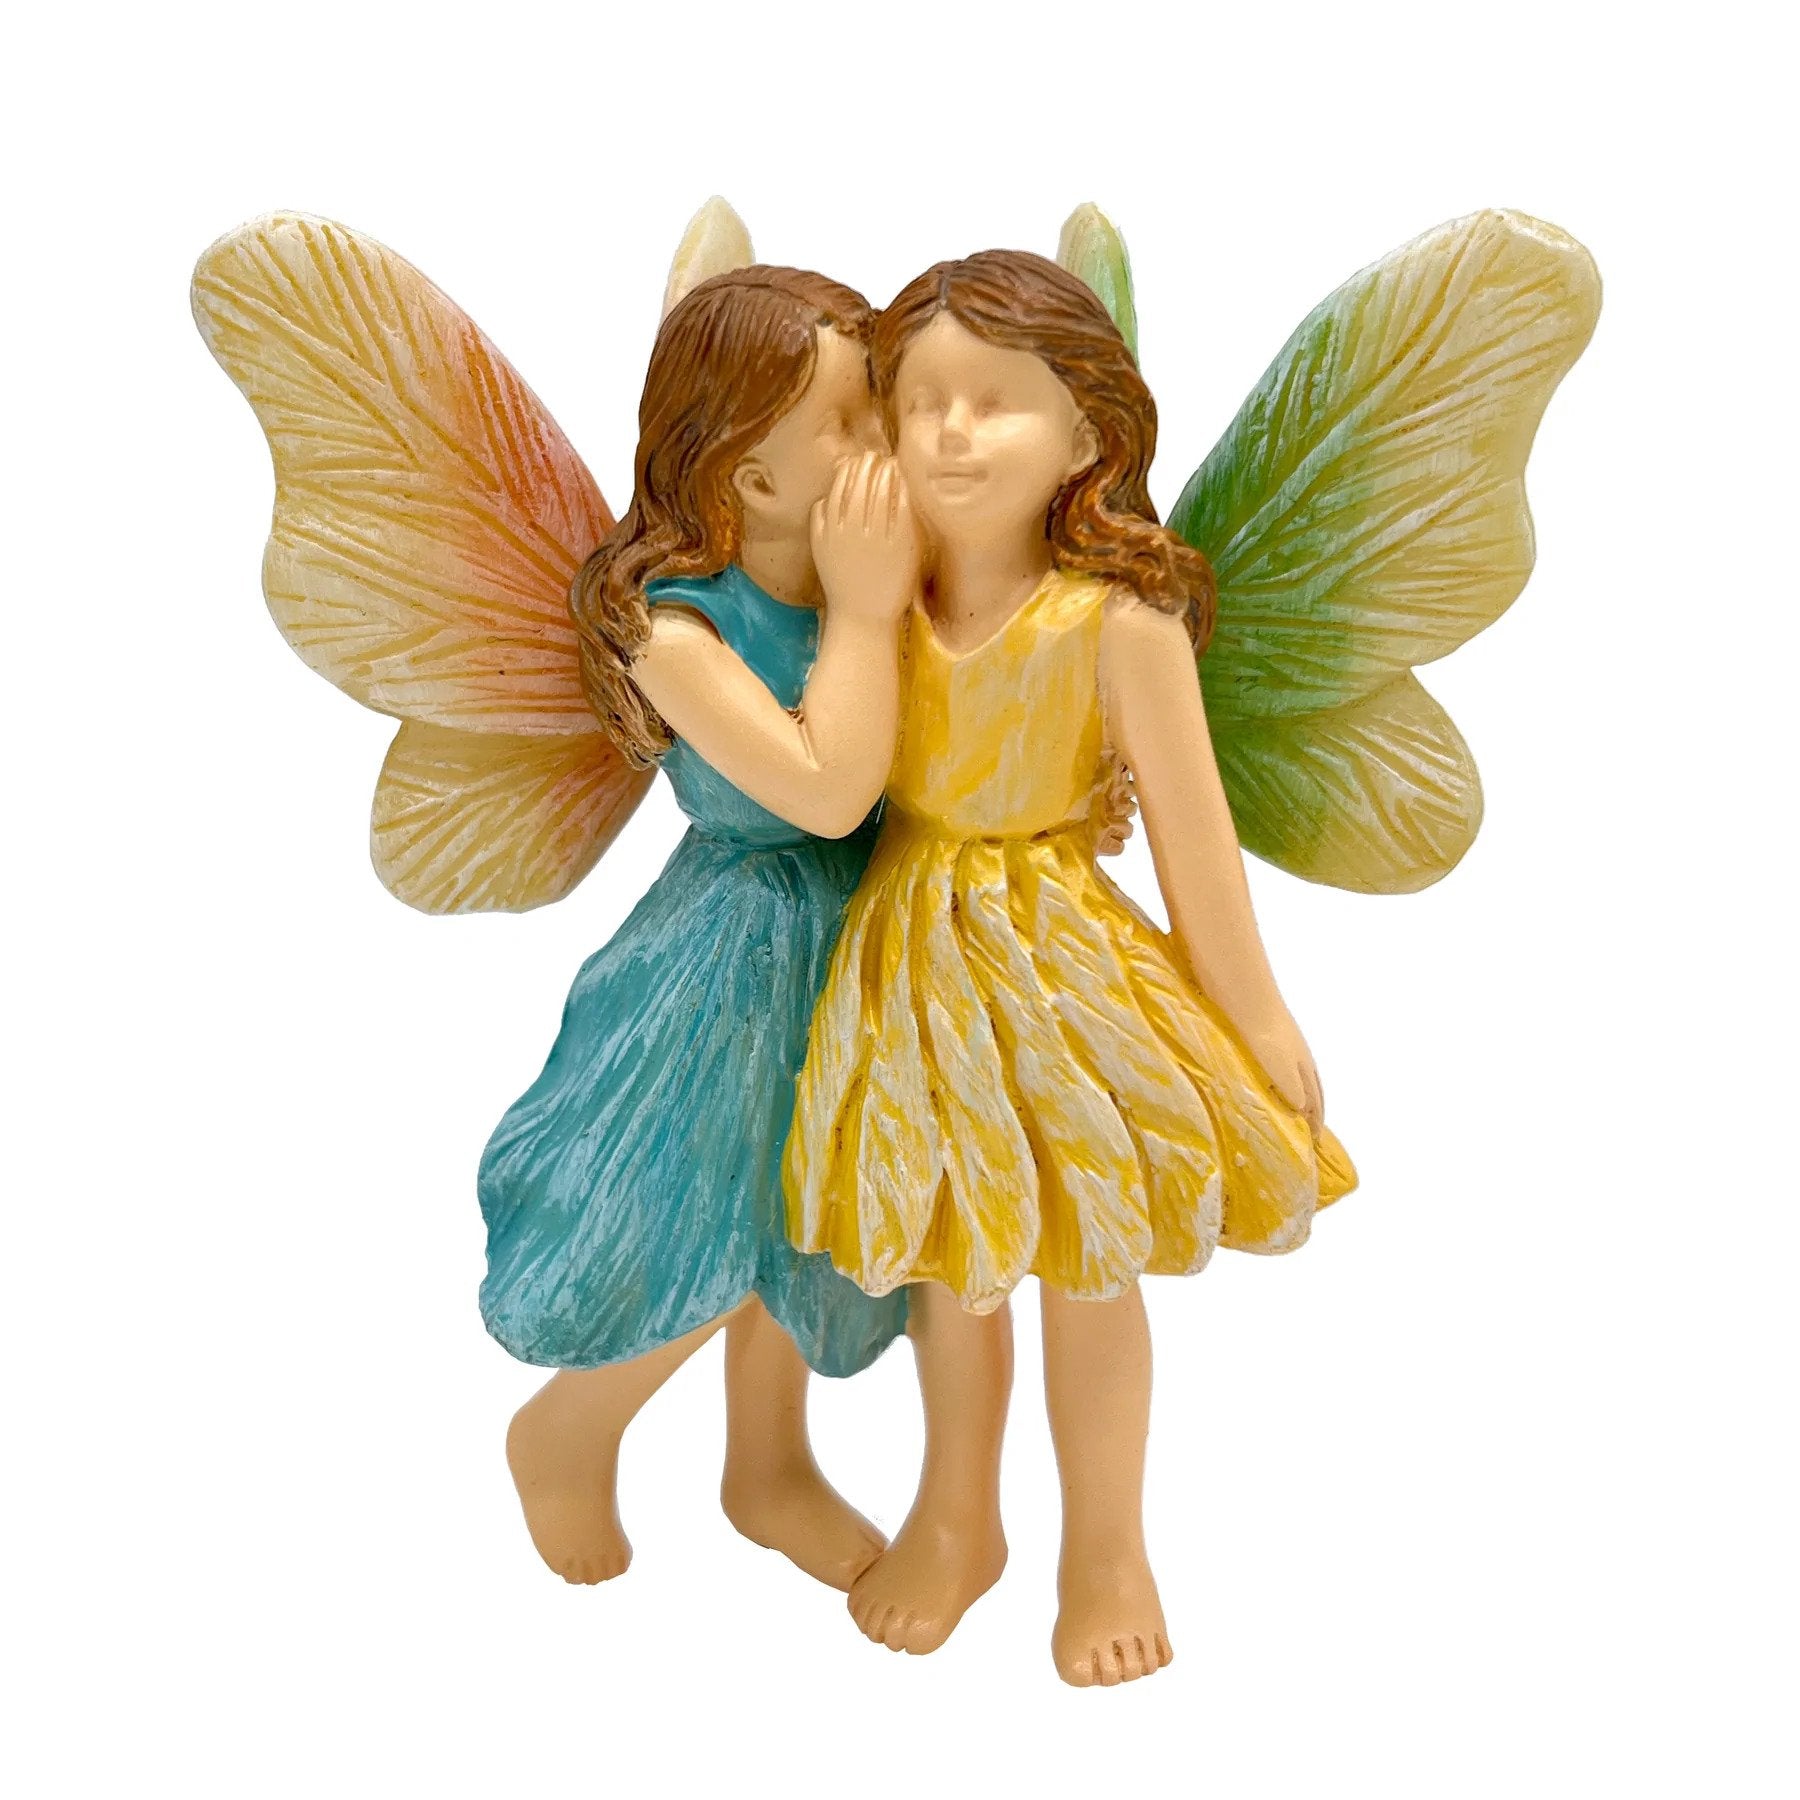 Sharing Secrets Fairies, Gossip Fairies